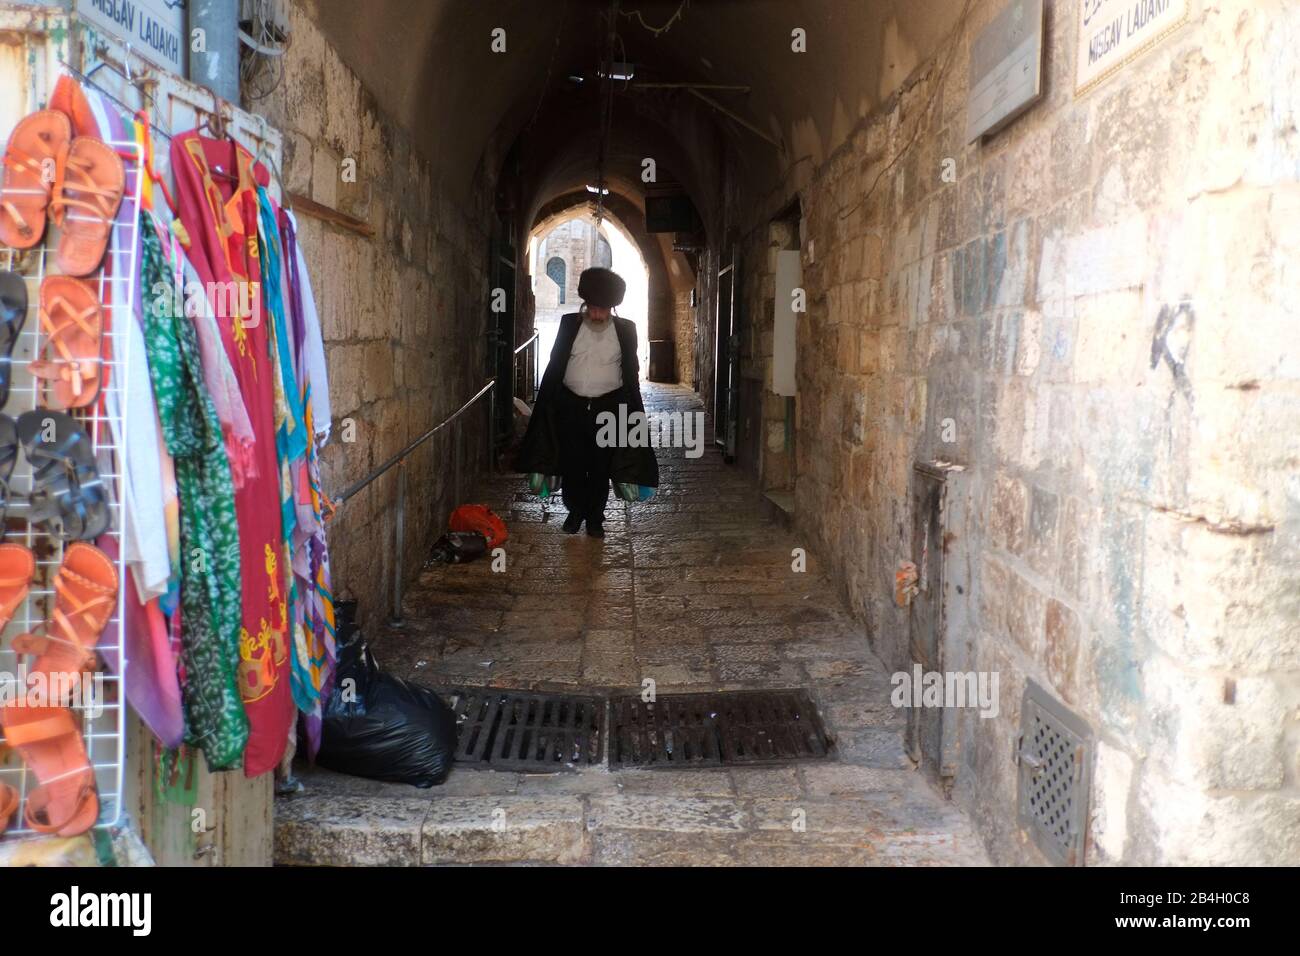 Le Juif orthodoxe se précipite au mur occidental pour la prière de Shabbat. Jérusalem - Israël Banque D'Images